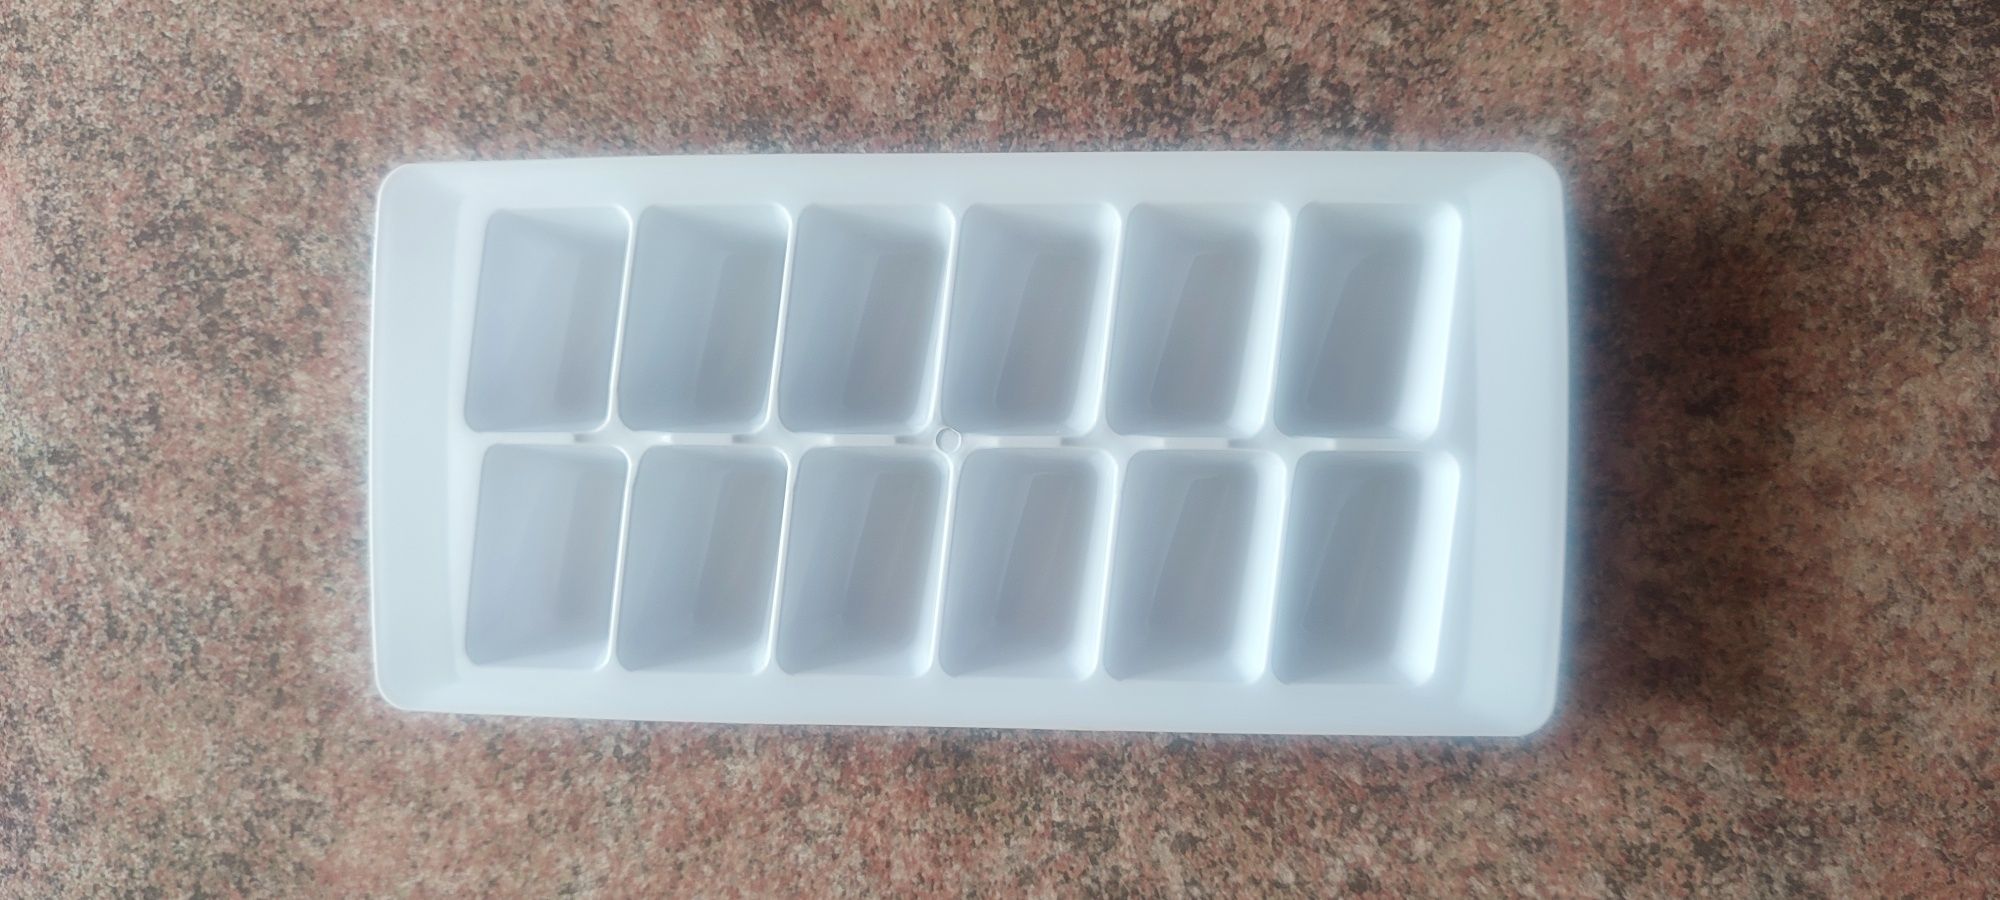 Формы для льда в холодильник